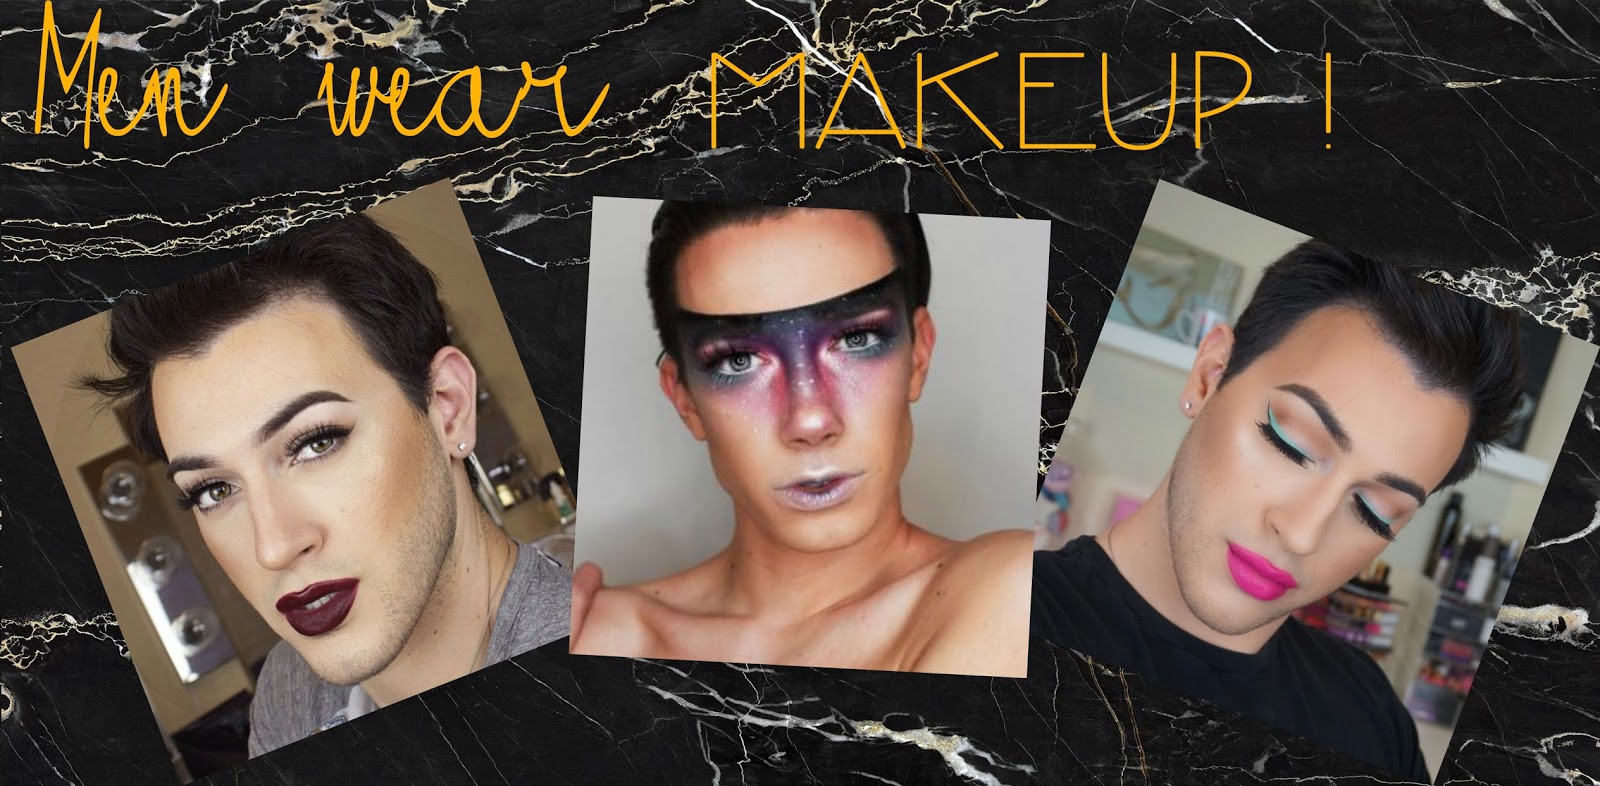 Men wear make up! - SharpeeE